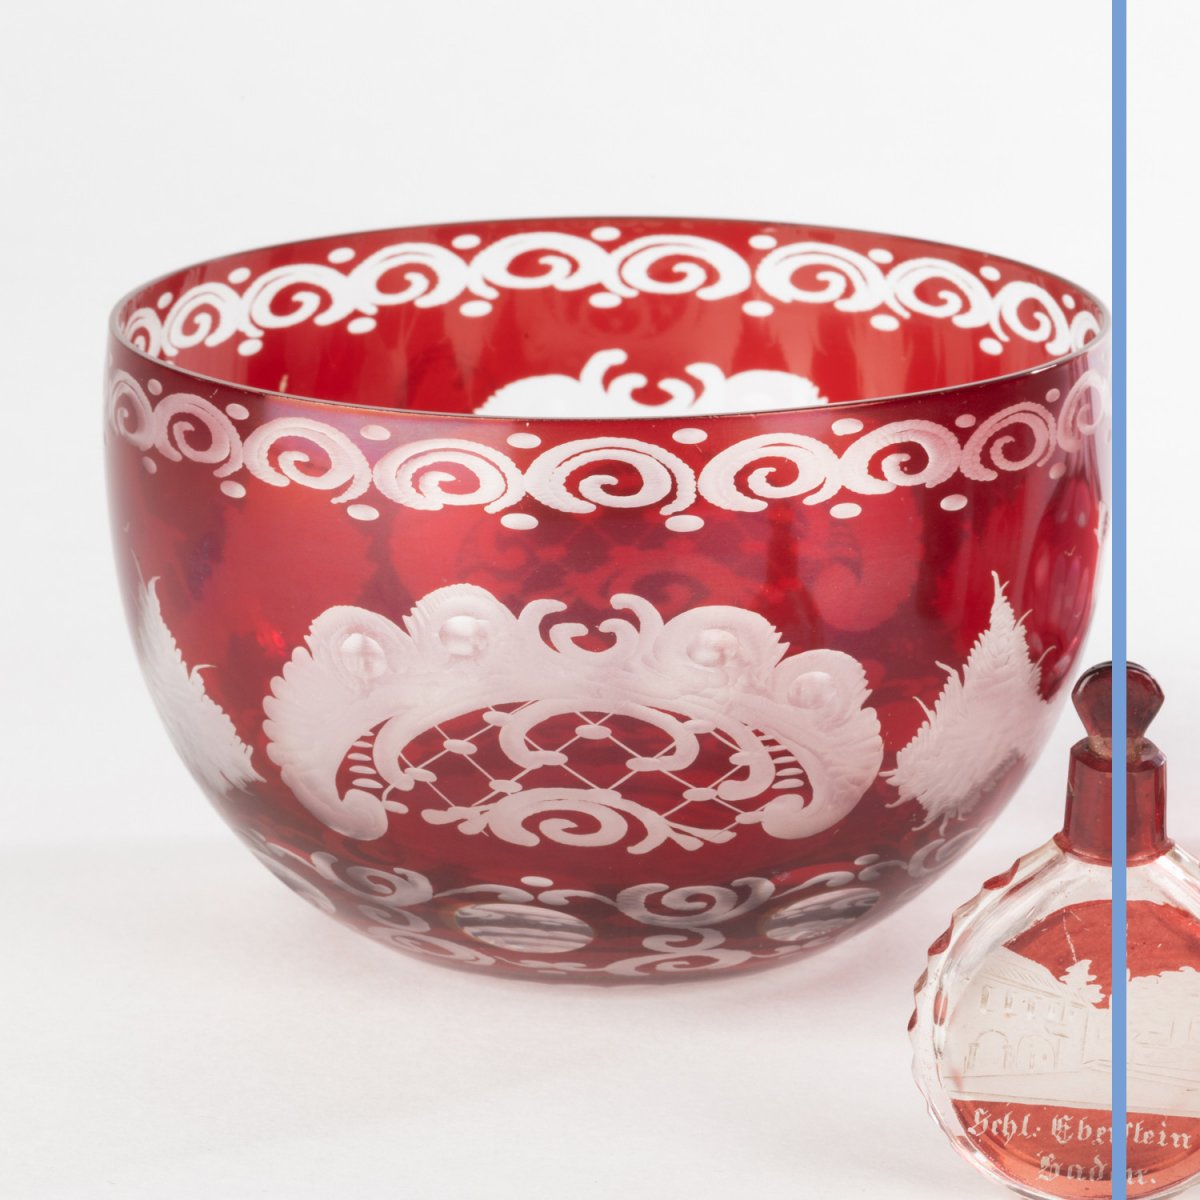 Ensemble de récipients en cristal de Bohème doublé rouge à décors gravés, XXe-photo-2